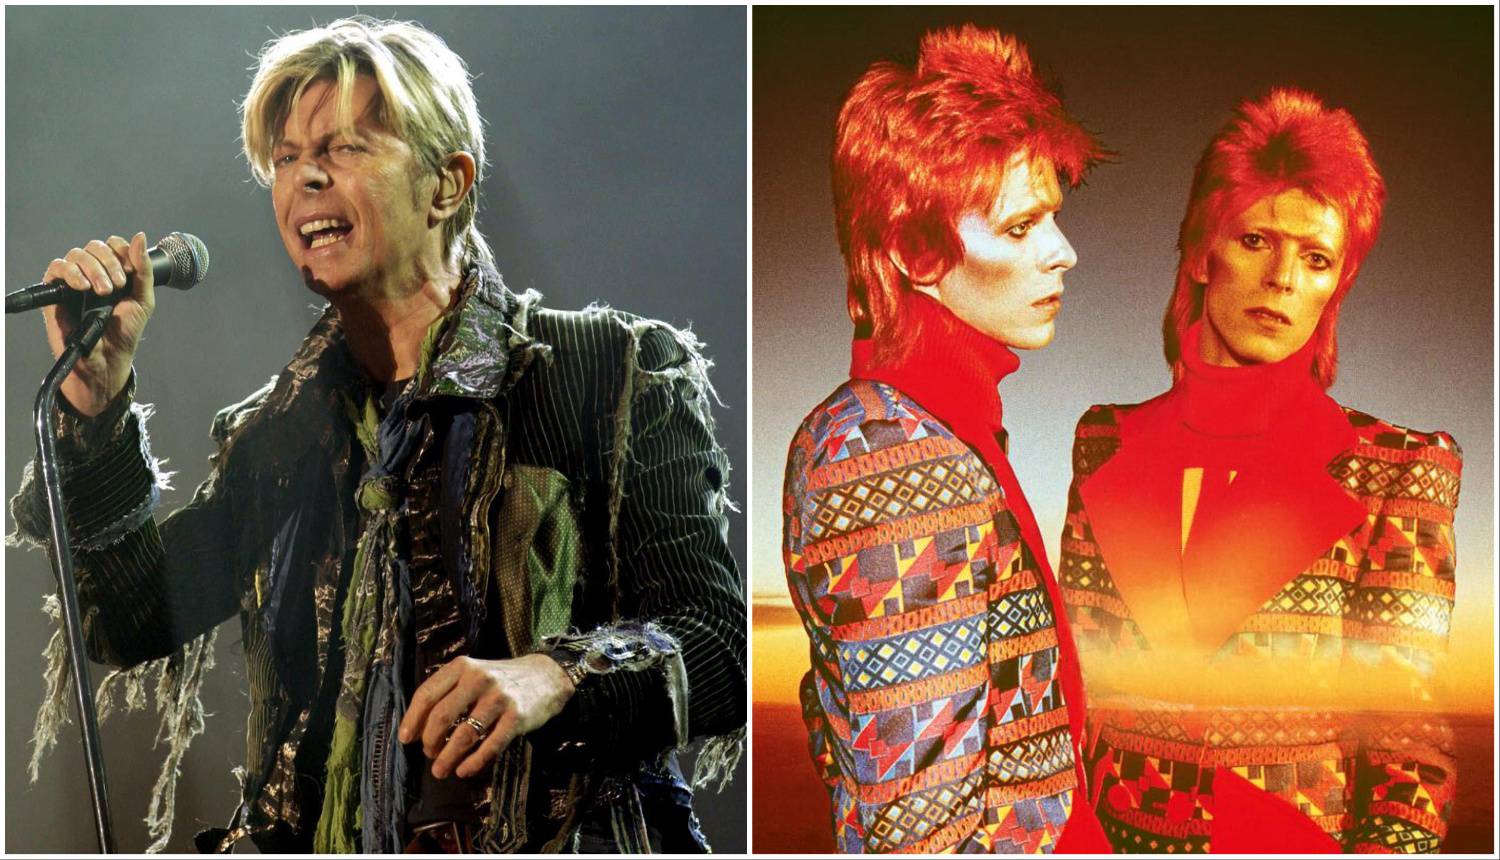 David Bowie osnovao je bend s 15 godina, a posljednji album je objavio dva dana prije smrti...